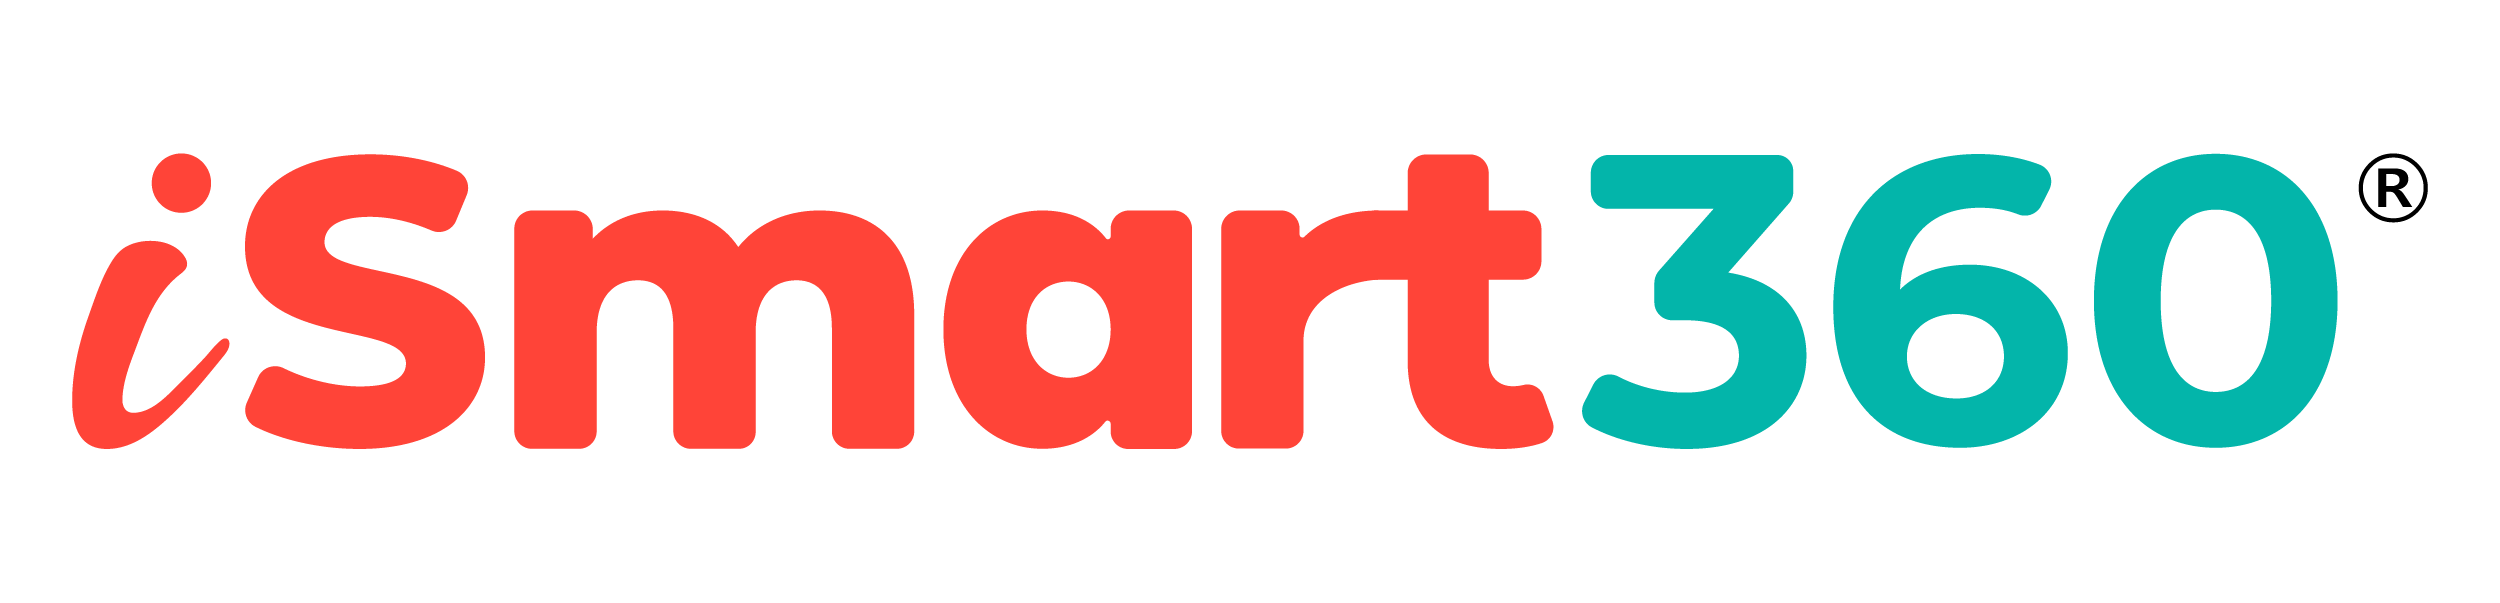 Logo iSmart360 Color RNV